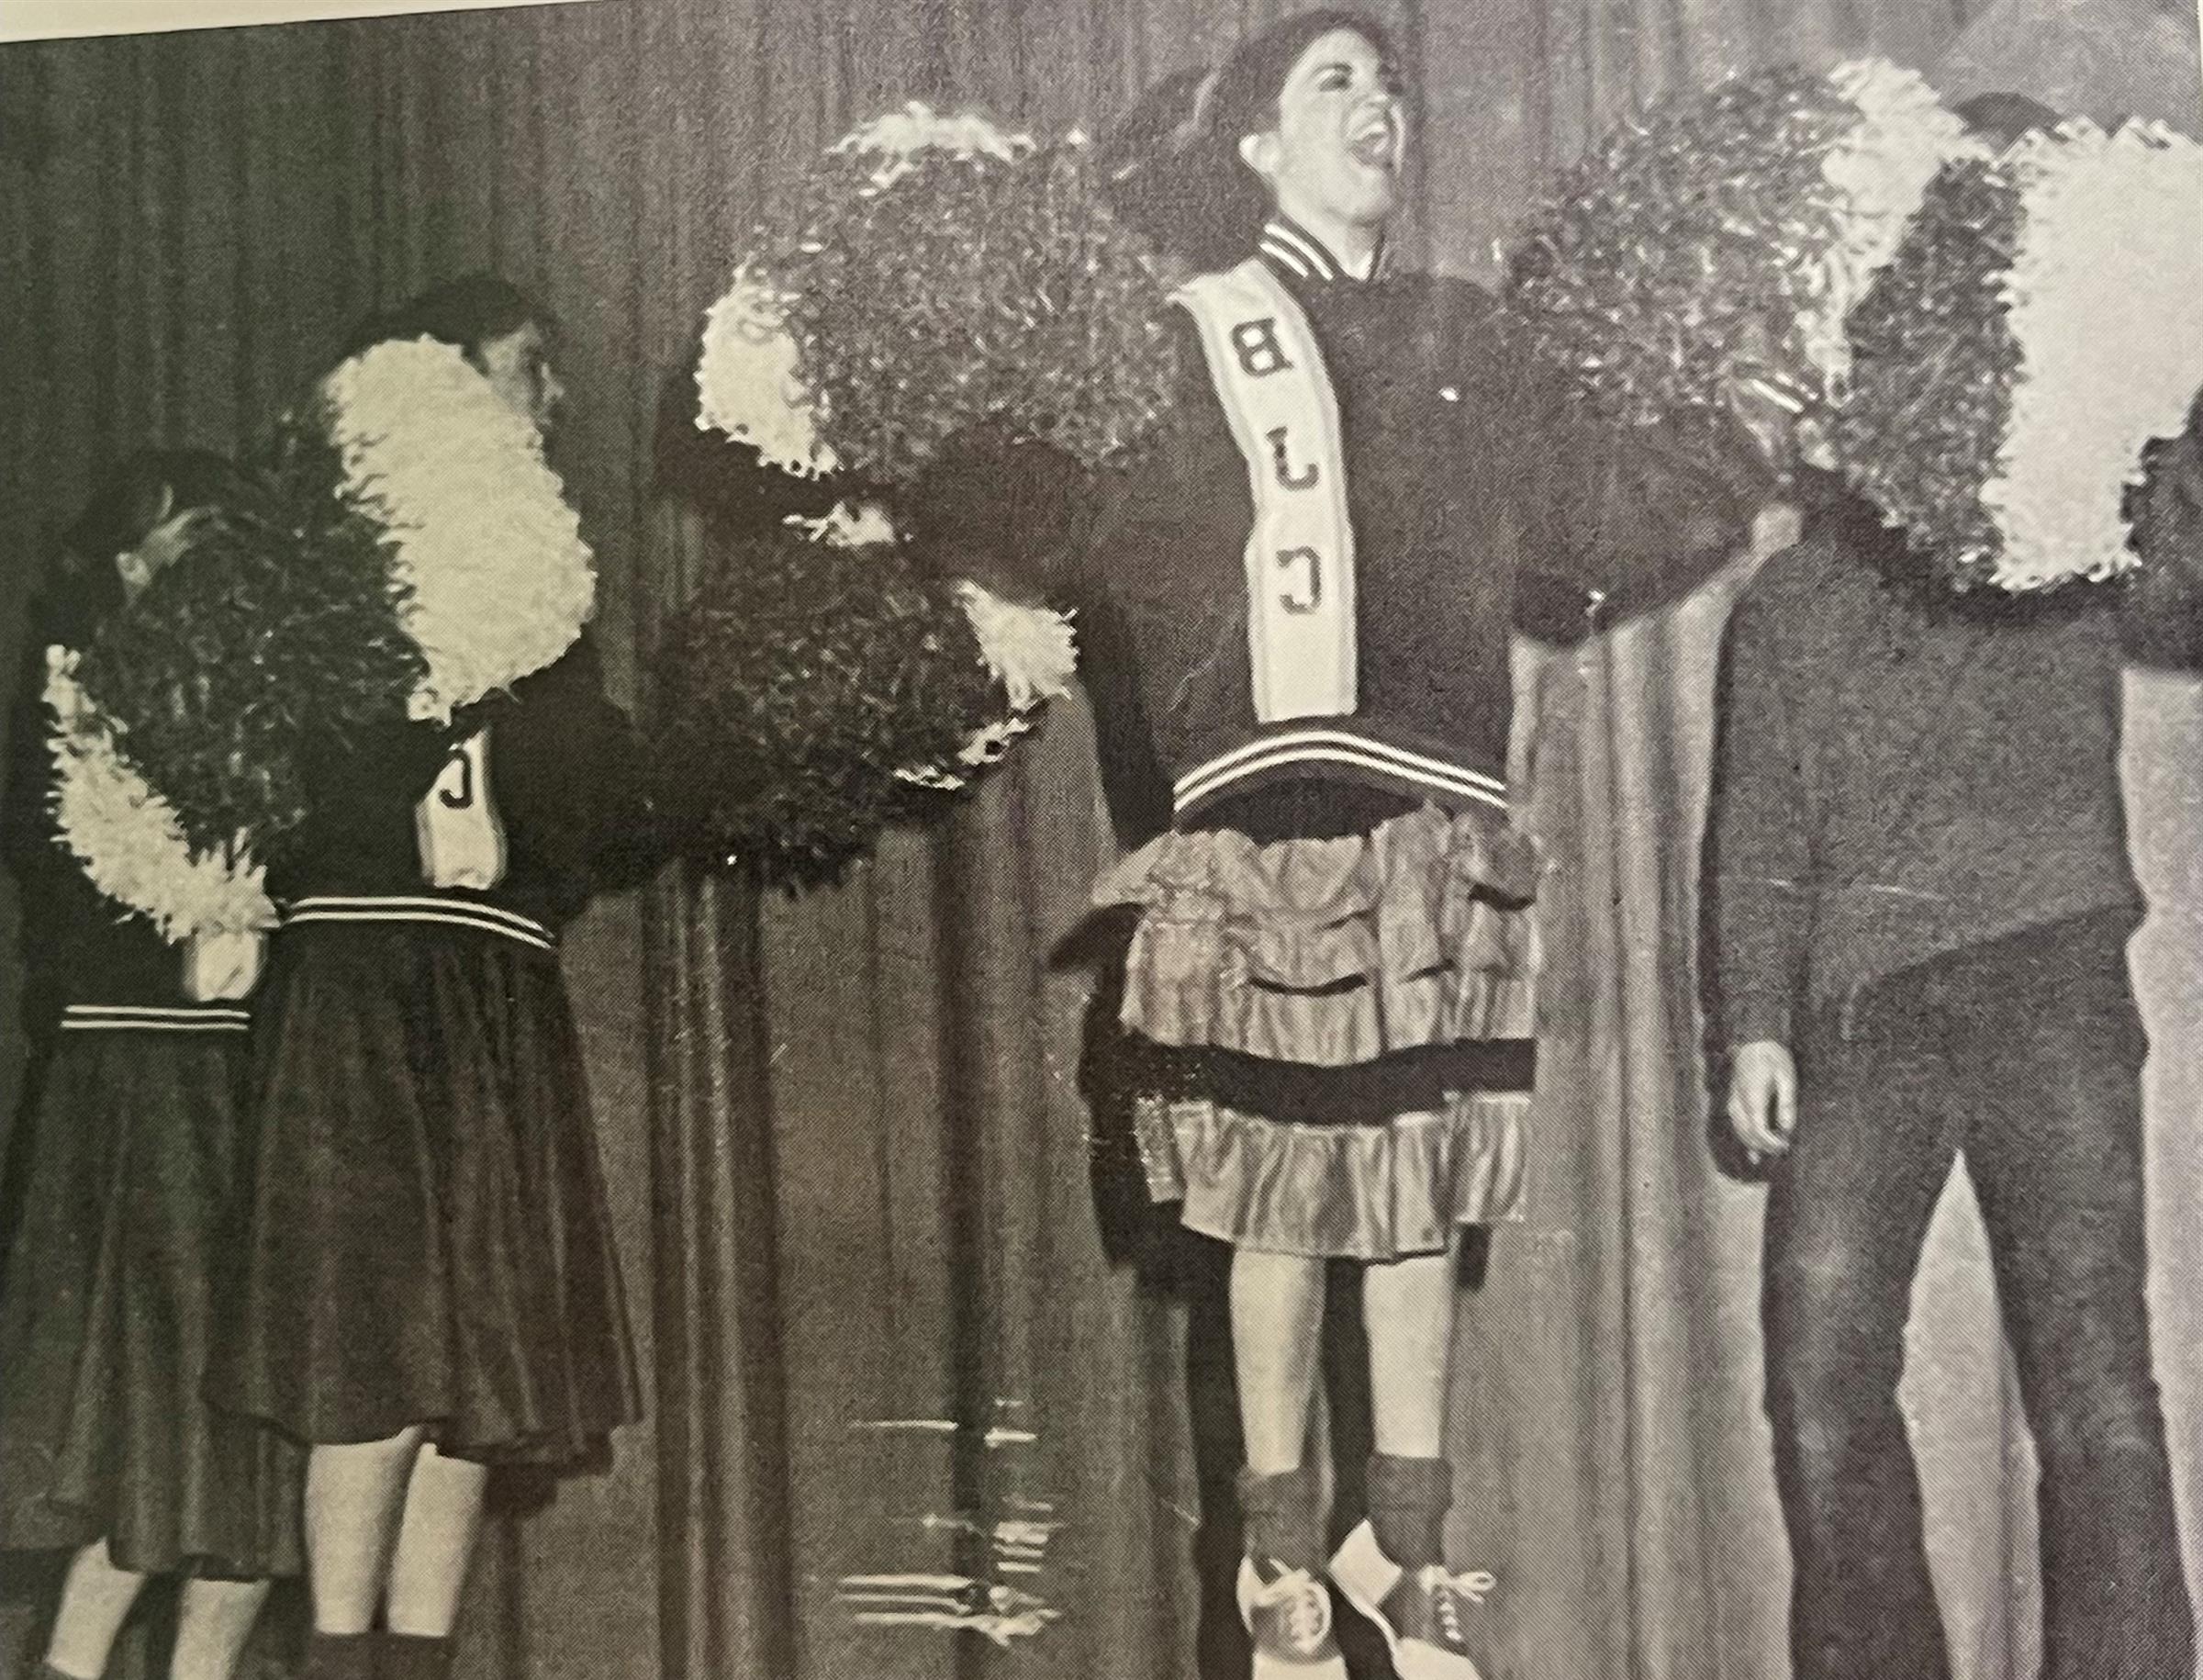 Cheerleaders, class of 1972